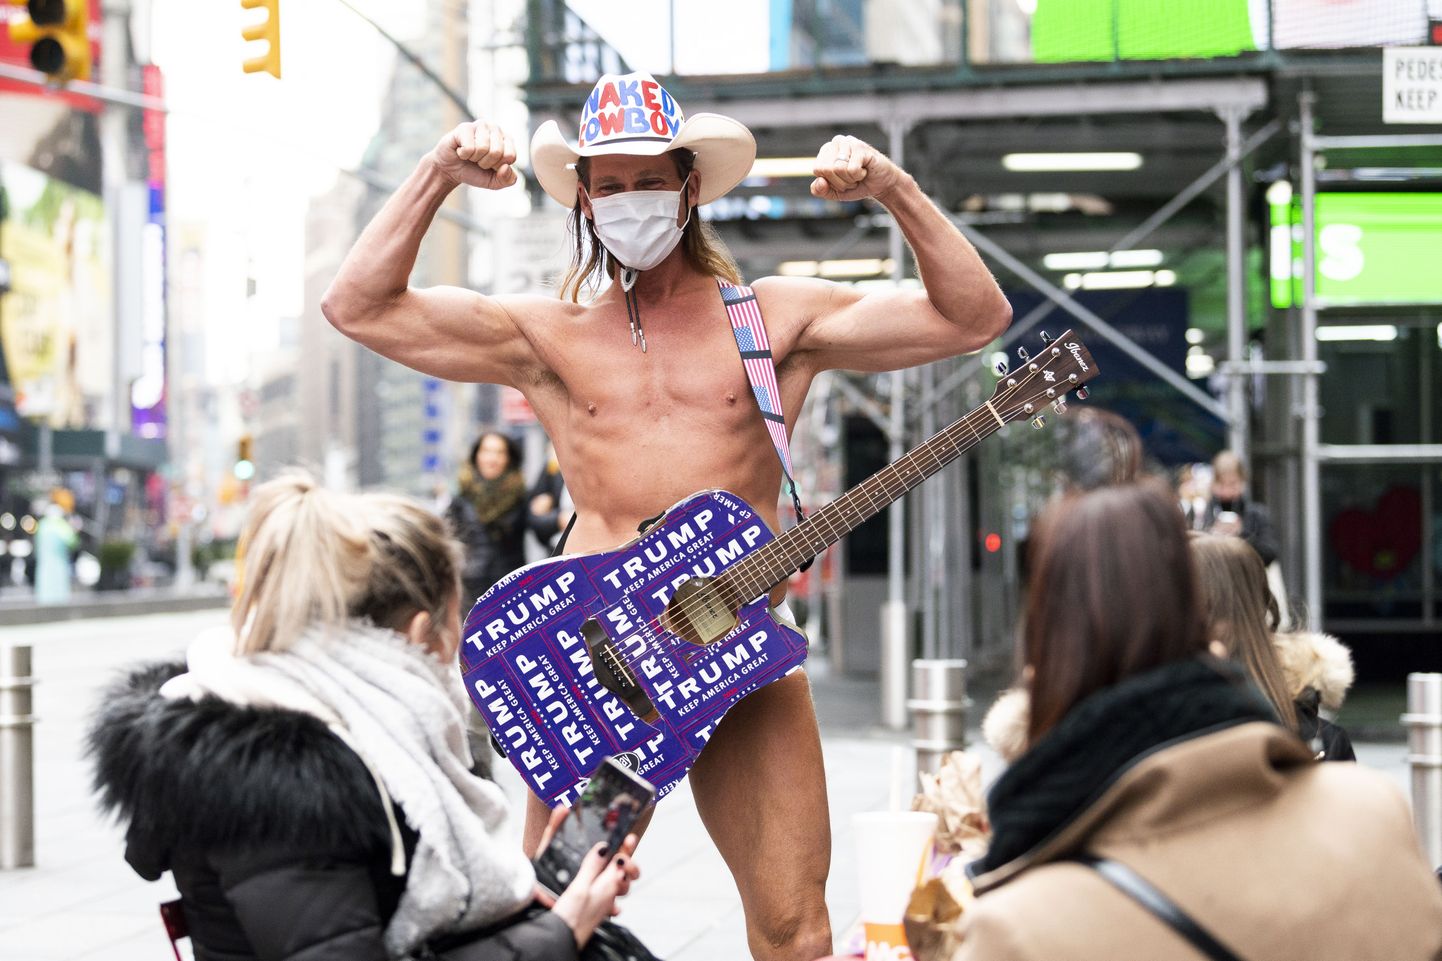 Isegi koroonaviirus ei peata legendaarset paljast kauboid. Kohusetundlikult kannab mees nüüd tänavale tulles maski. Viimati nähti teda eelmise nädala lõpuks New Yorgi Times Square'il.